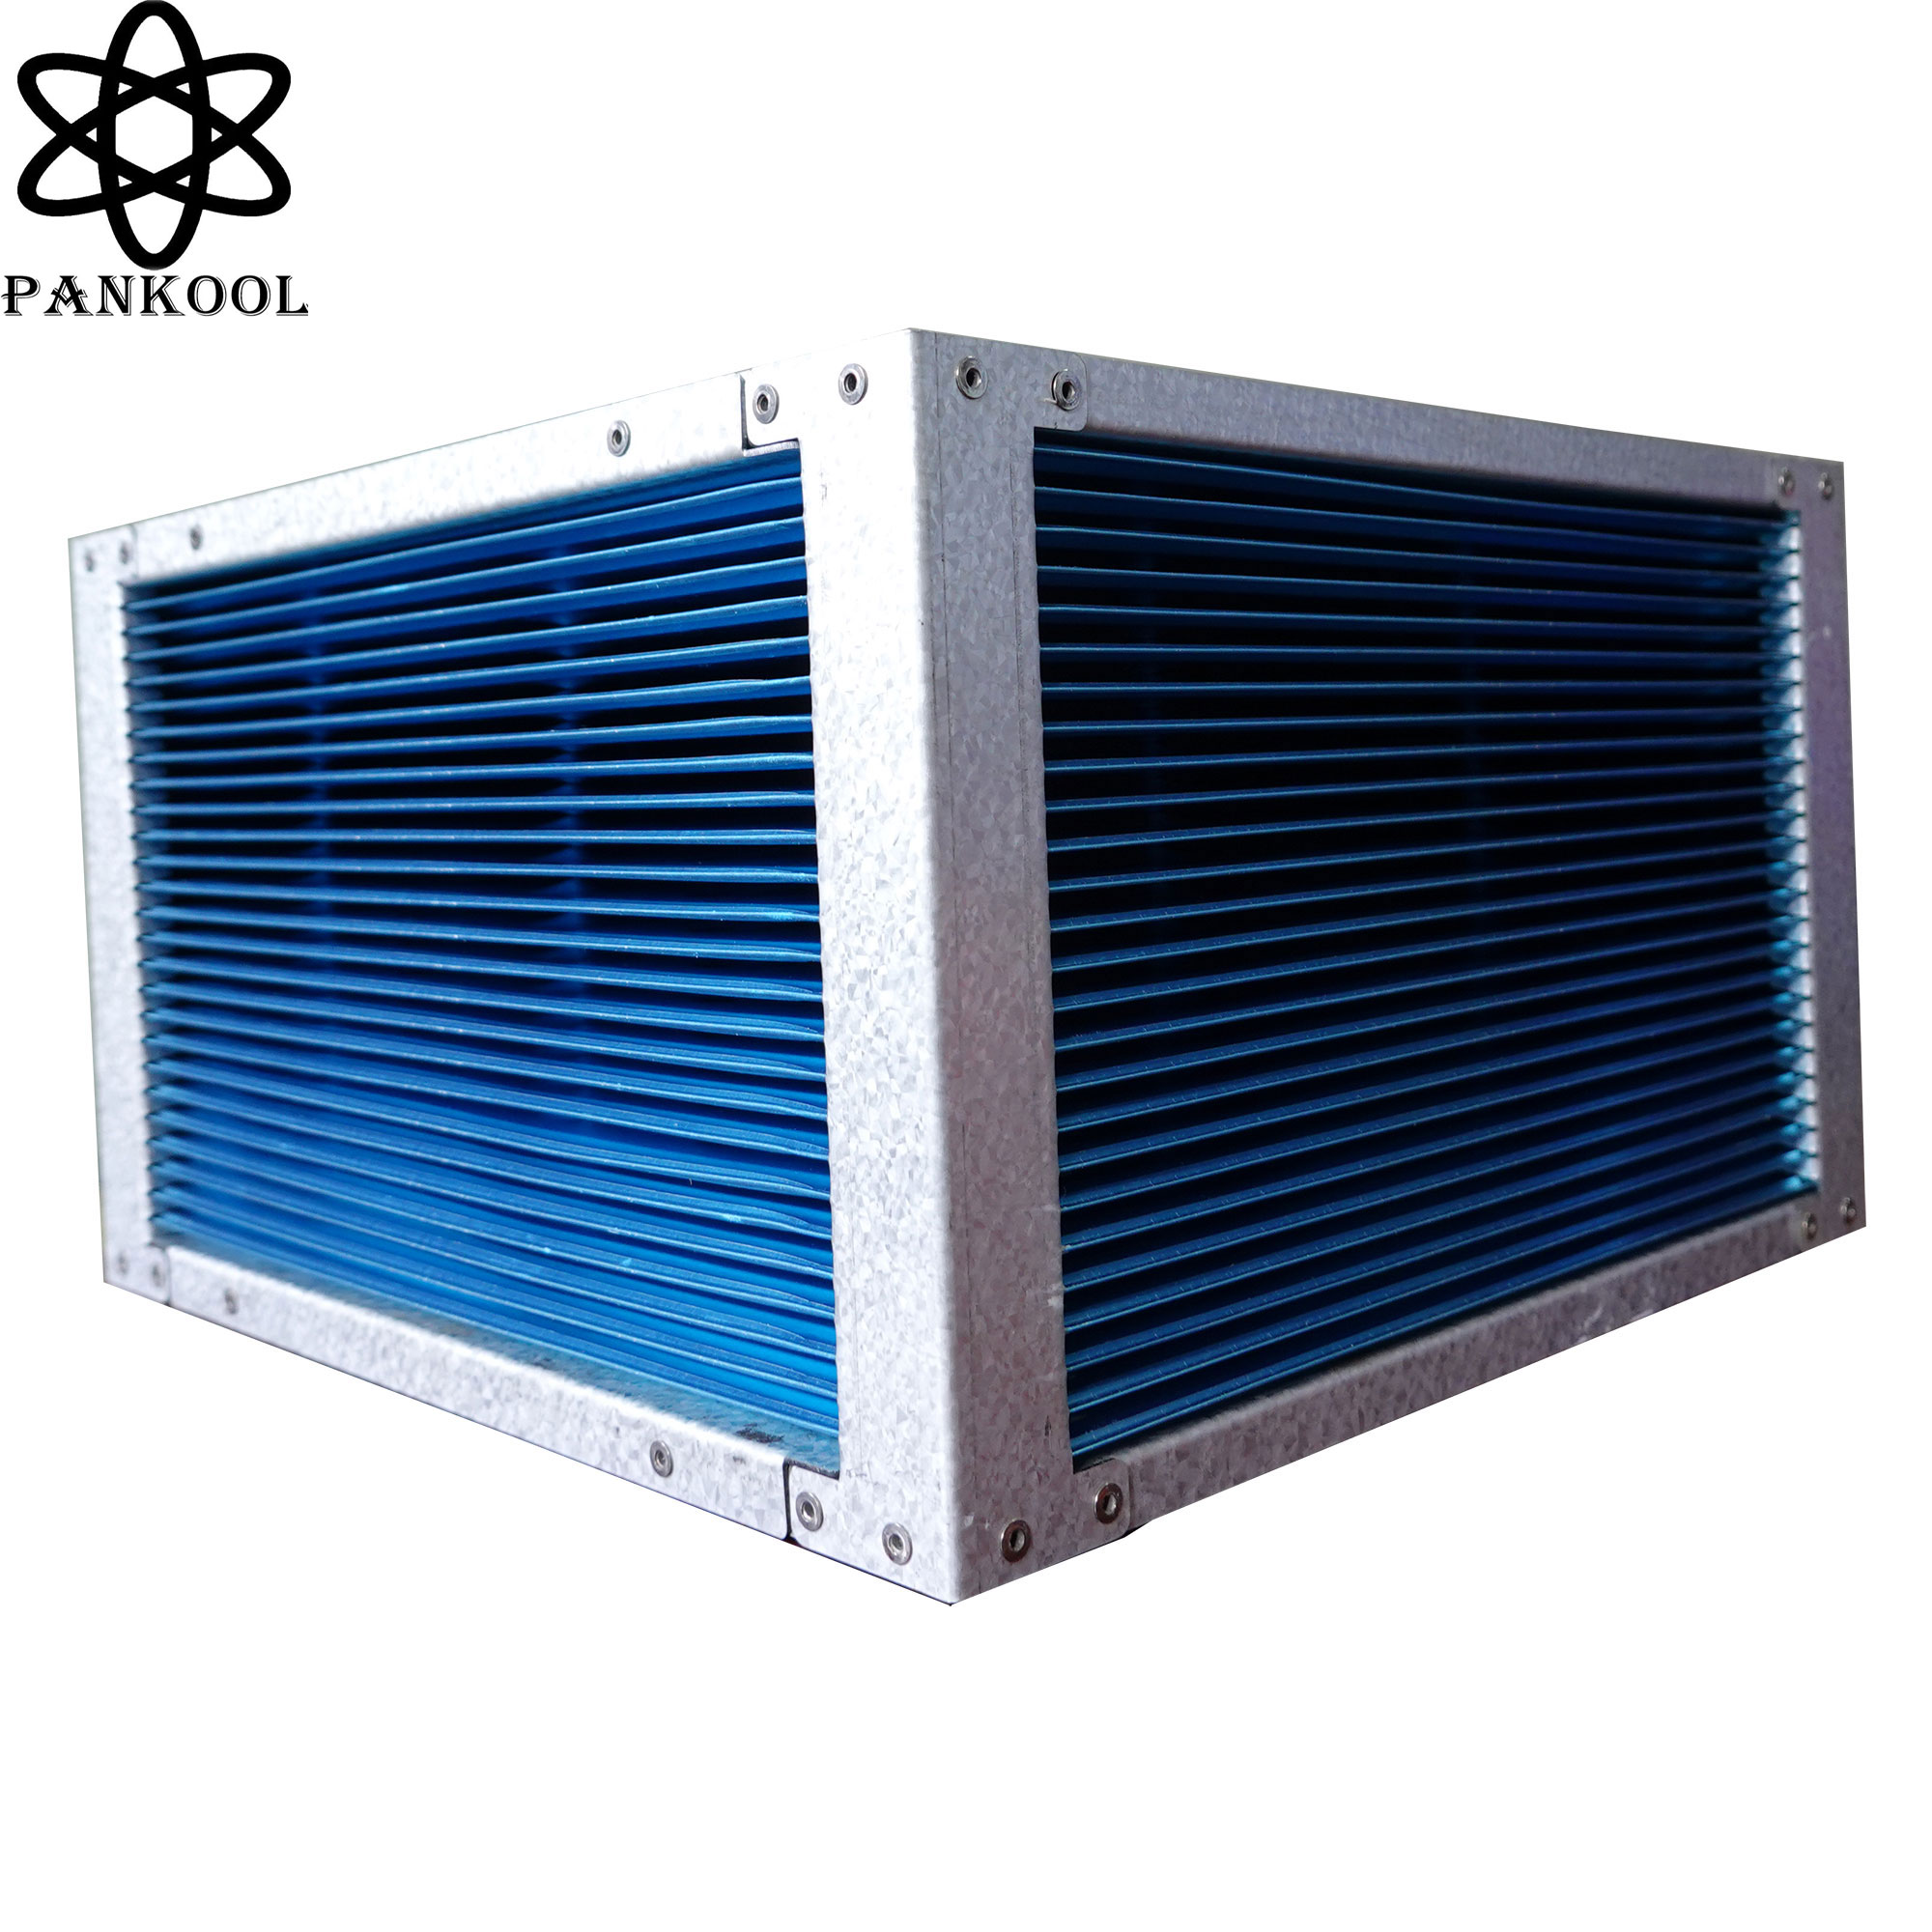 ventilation system crossflow 0.13mm thick aluminum foils sensible heat exchanger